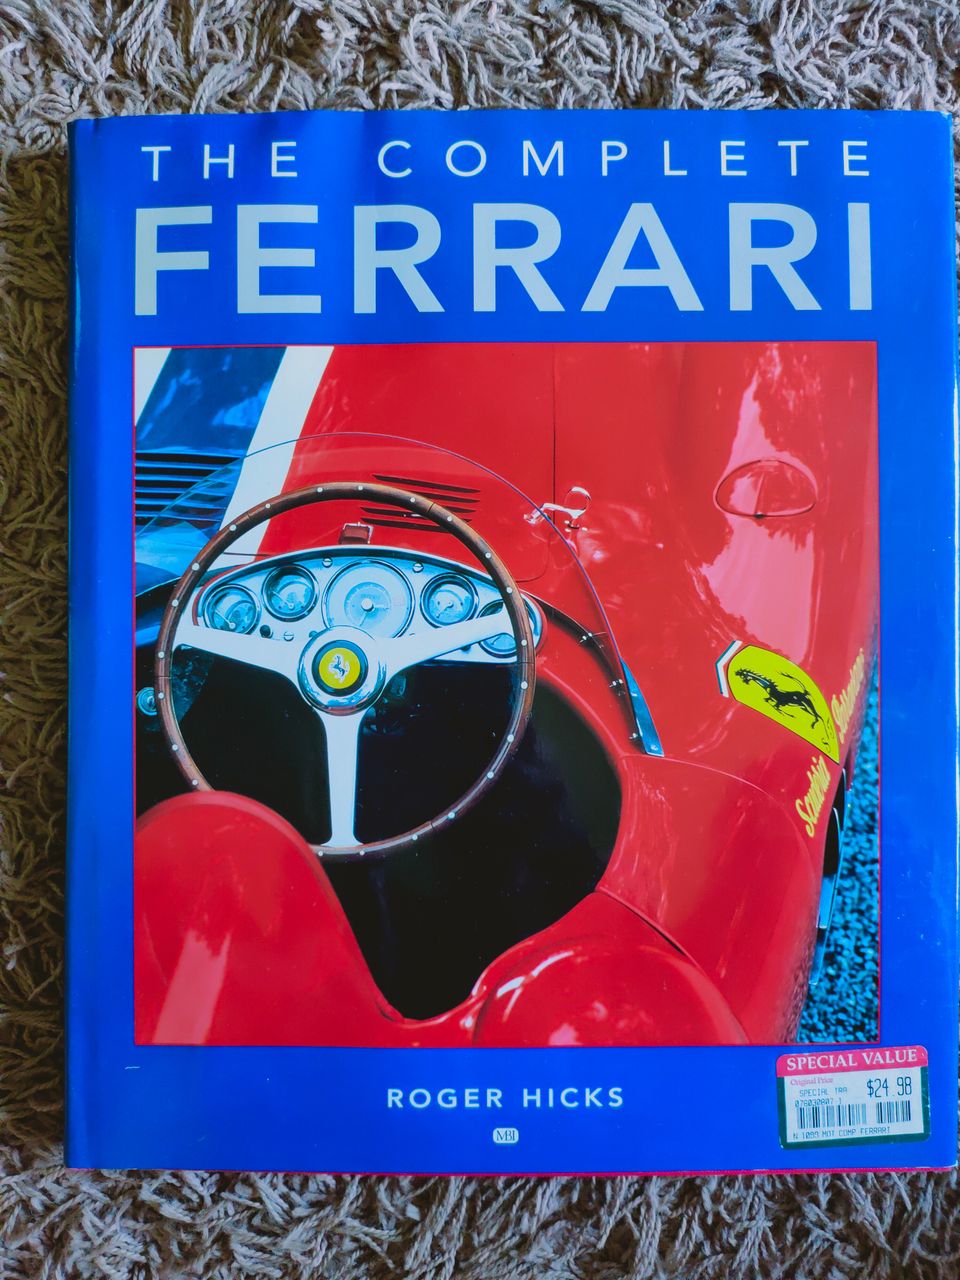 Ferrari kirja